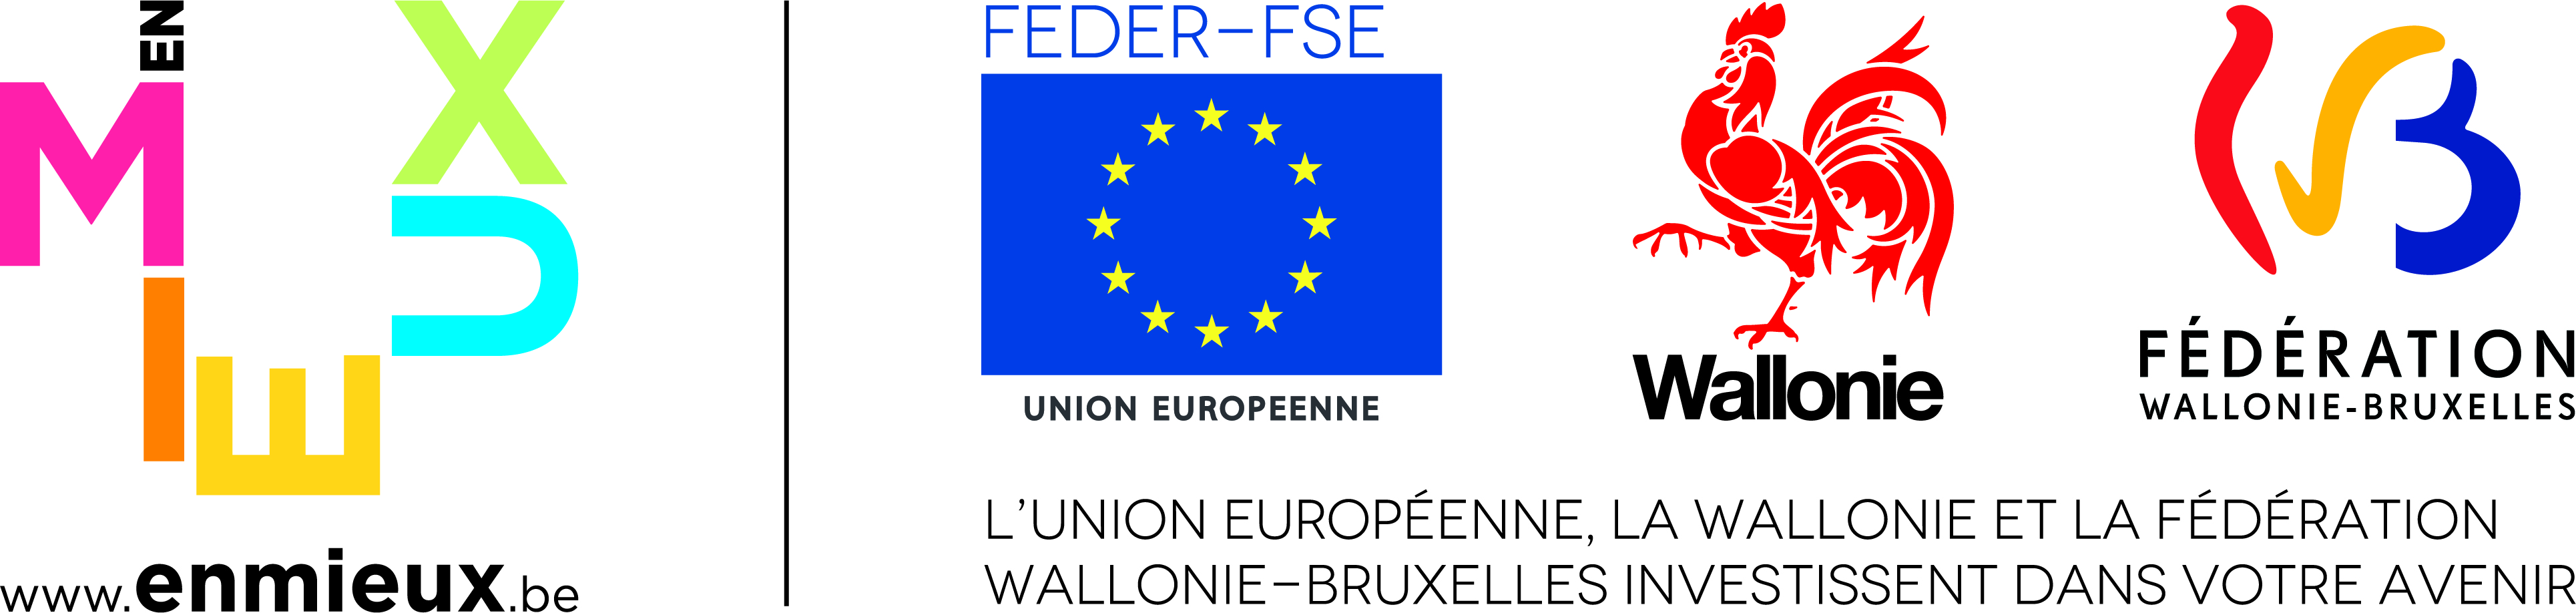 logos FEDER-FSE